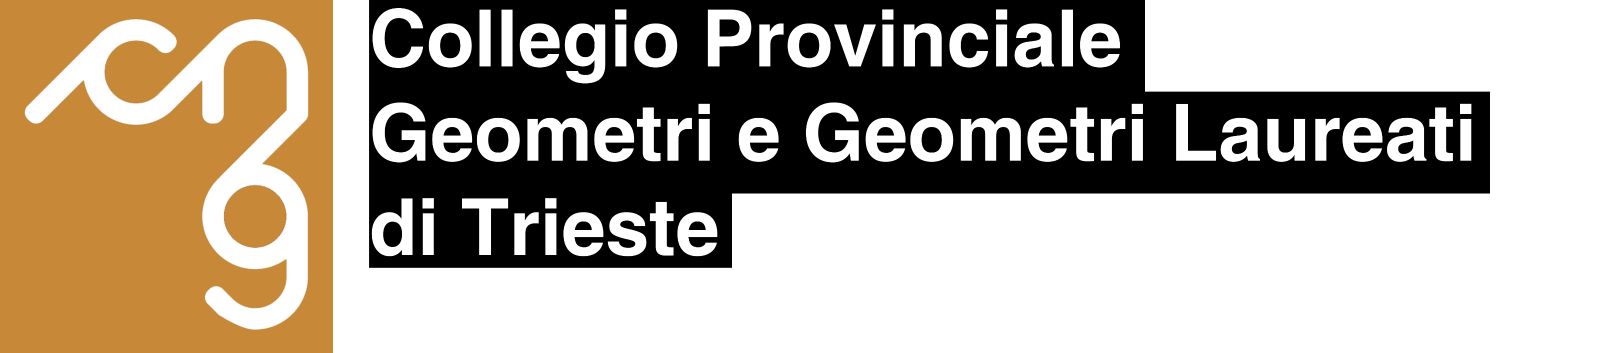 Collegio Geometri della Provincia di Trieste